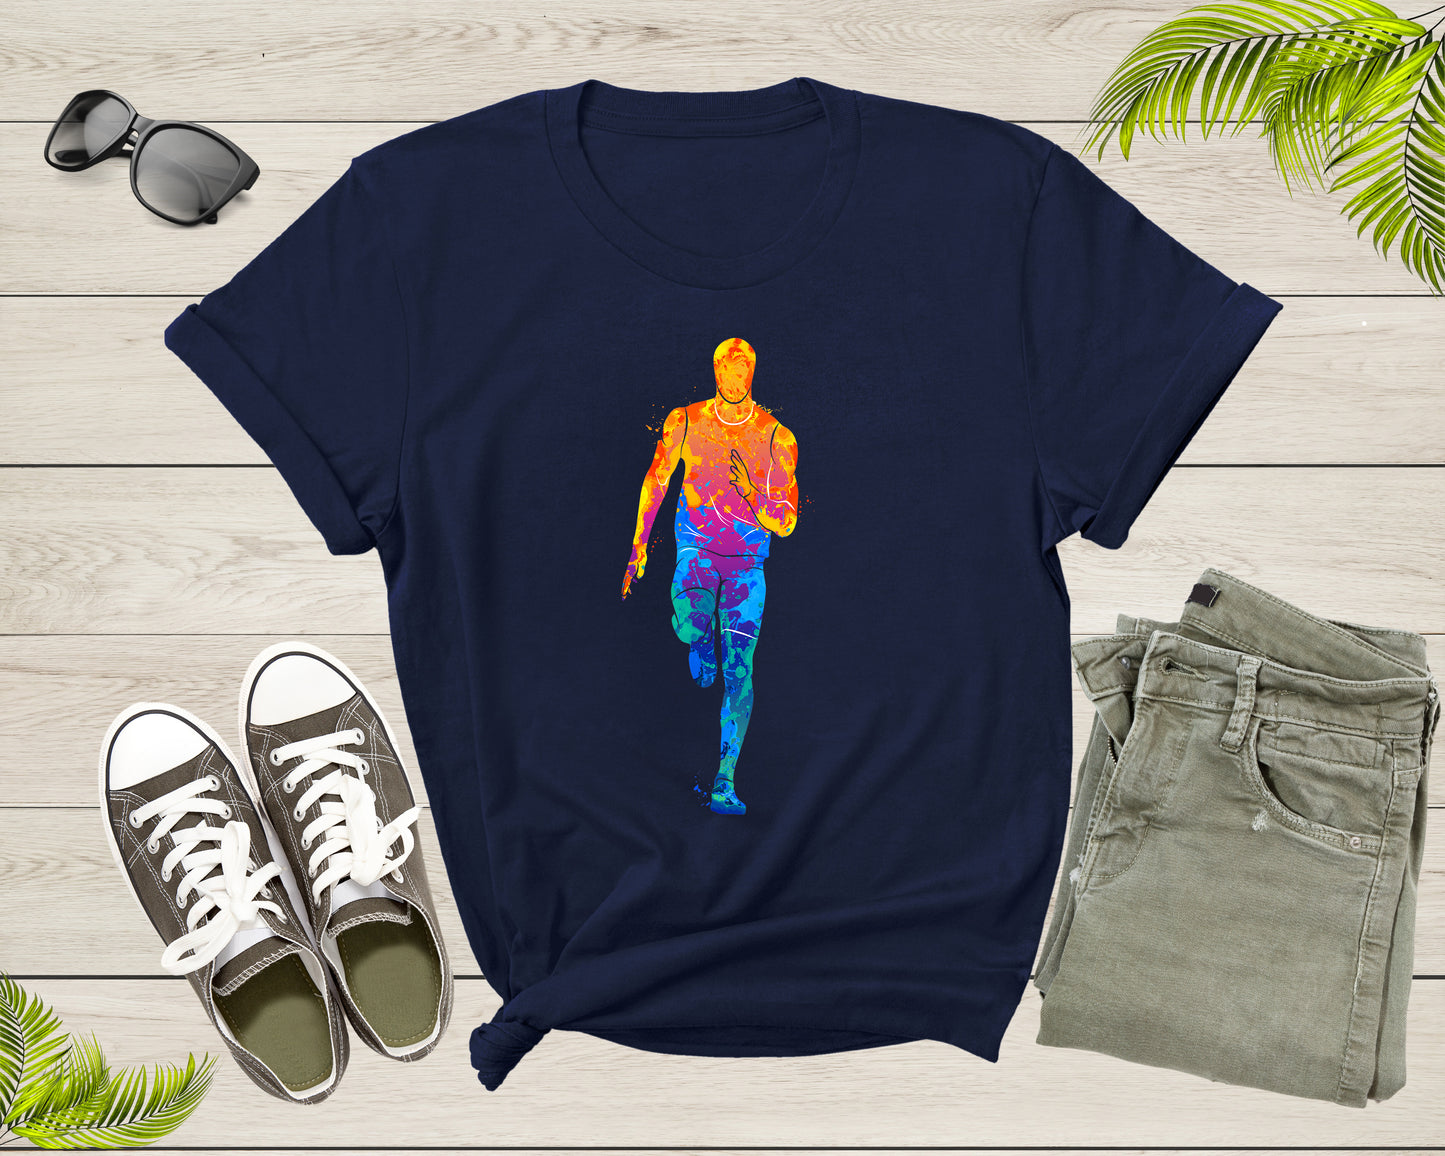 Running Man Colorful Silhouette Man Doing Sport Exercise T-Shirt Runner Running Lover Gift T Shirt for Men Women Kids Boys Girls Tshirt